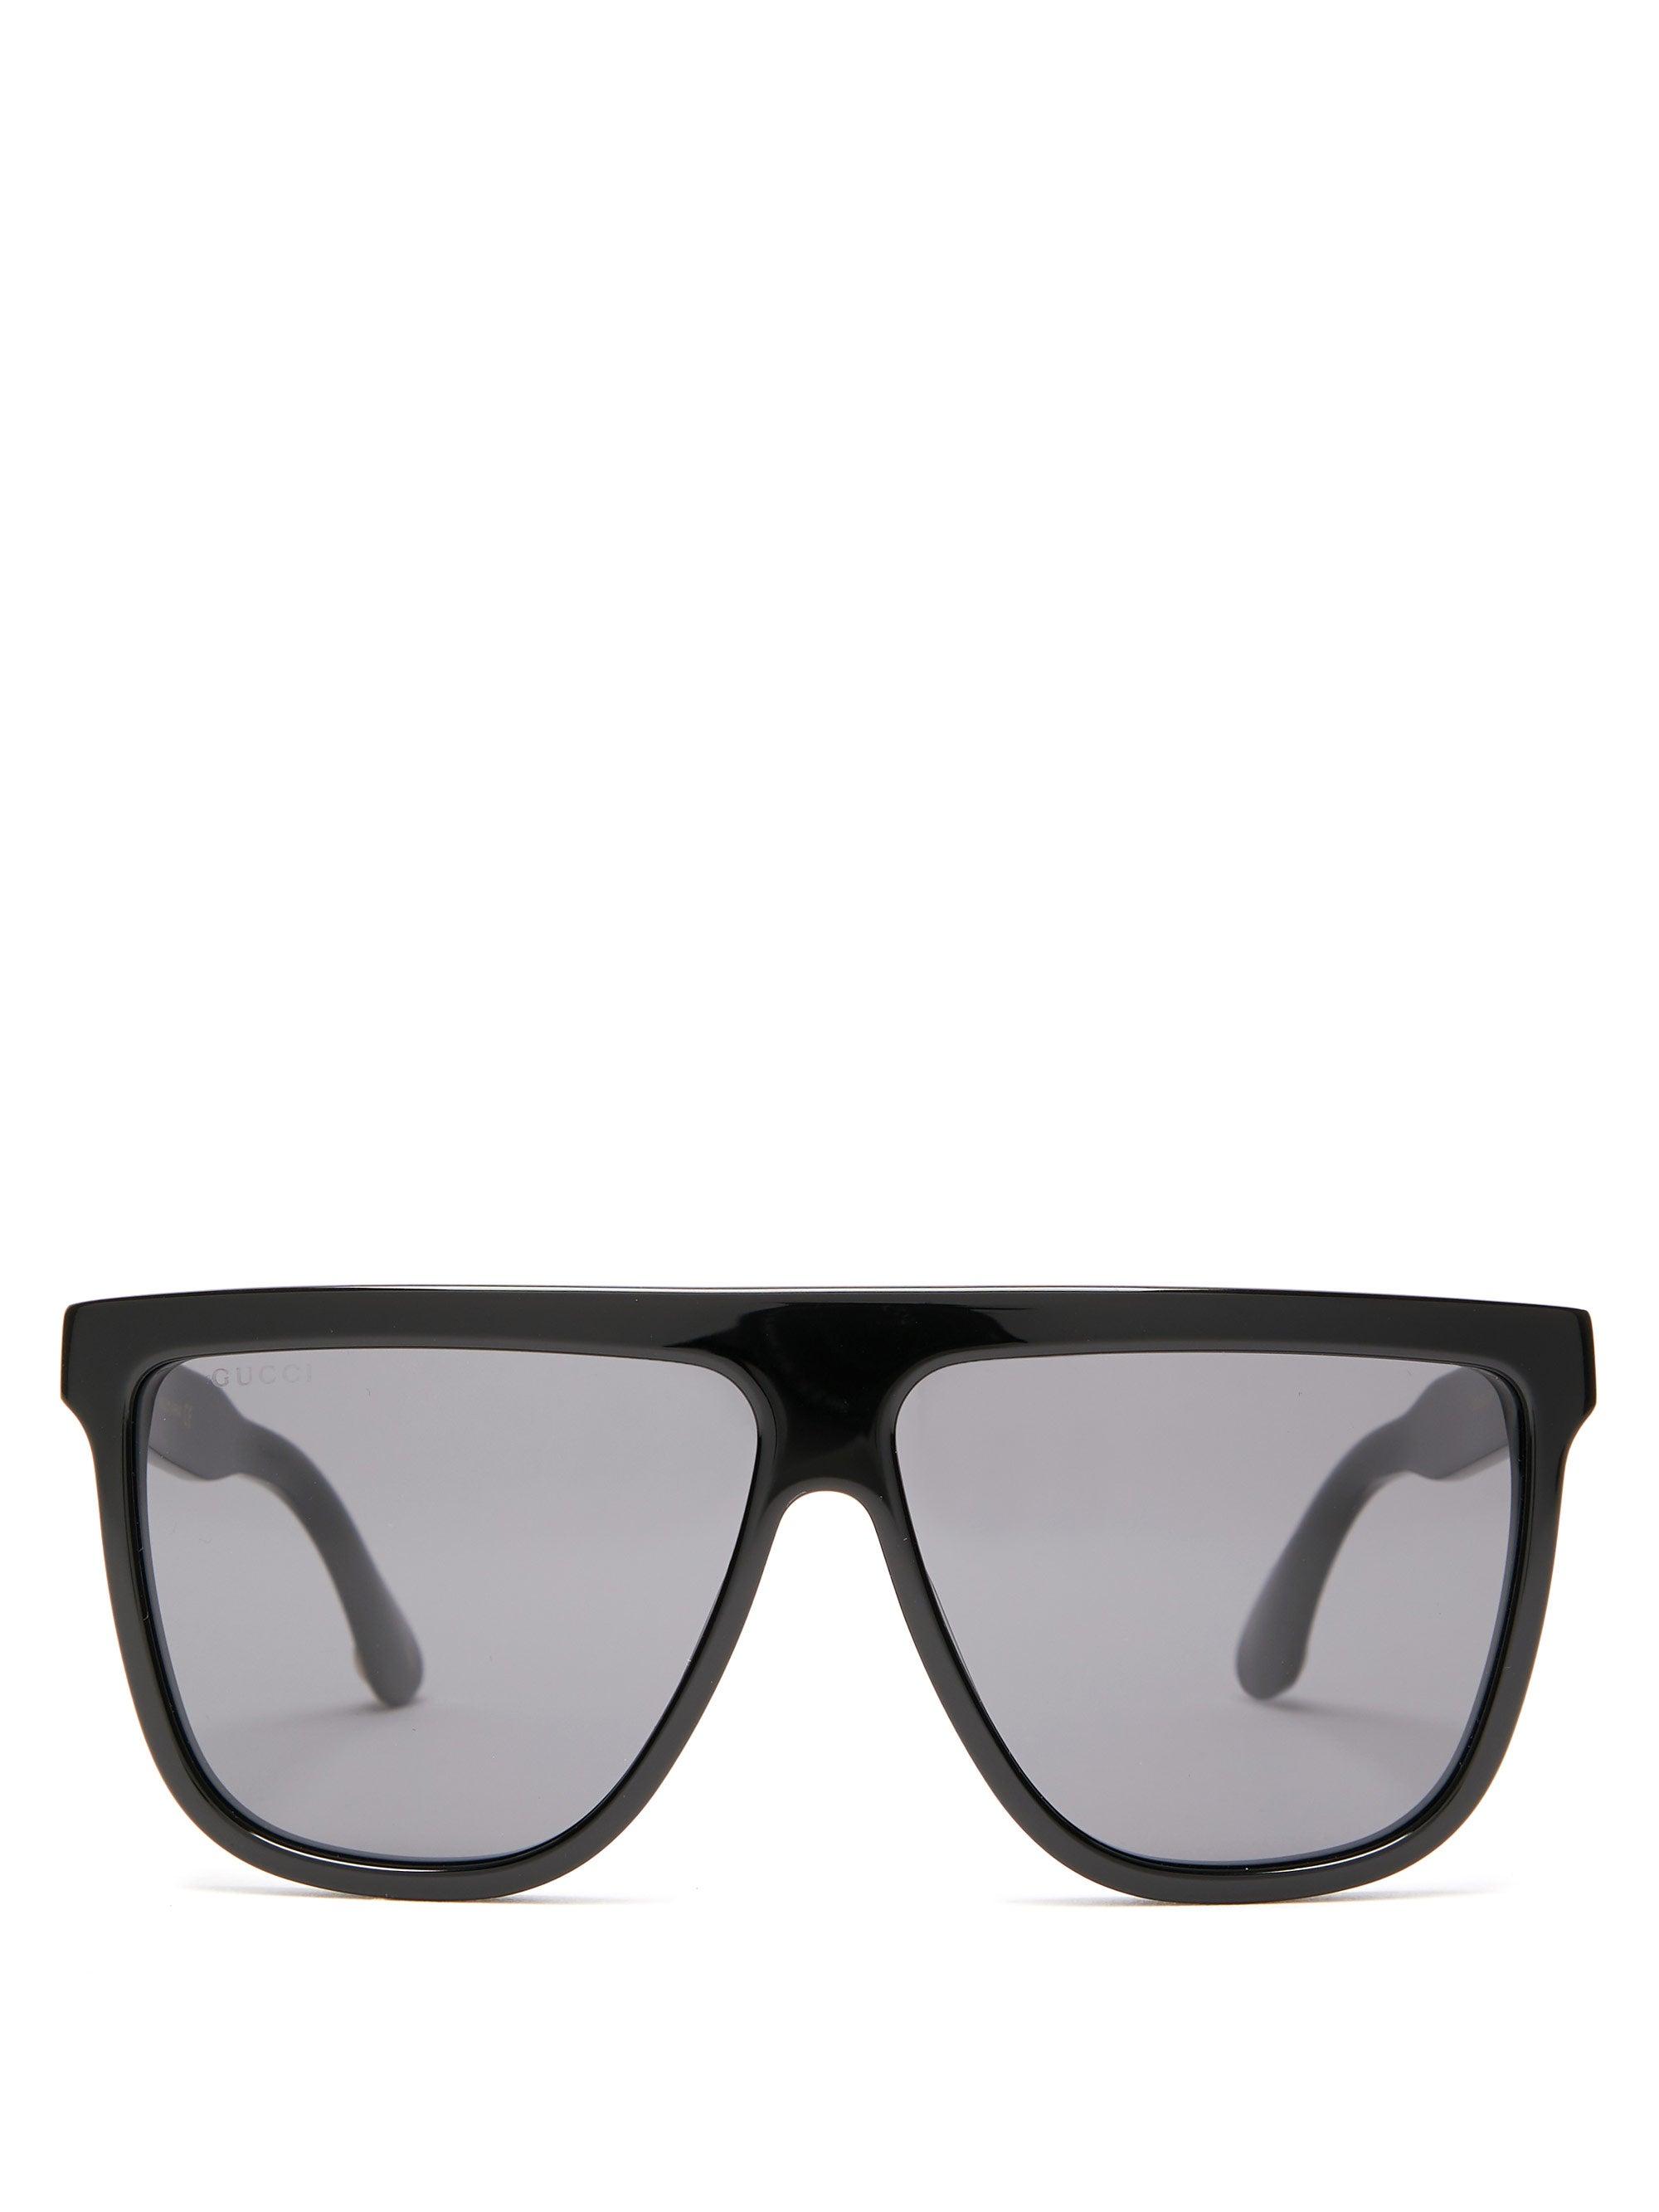 Gucci Flat Top Acetate Sunglasses in Black | Lyst